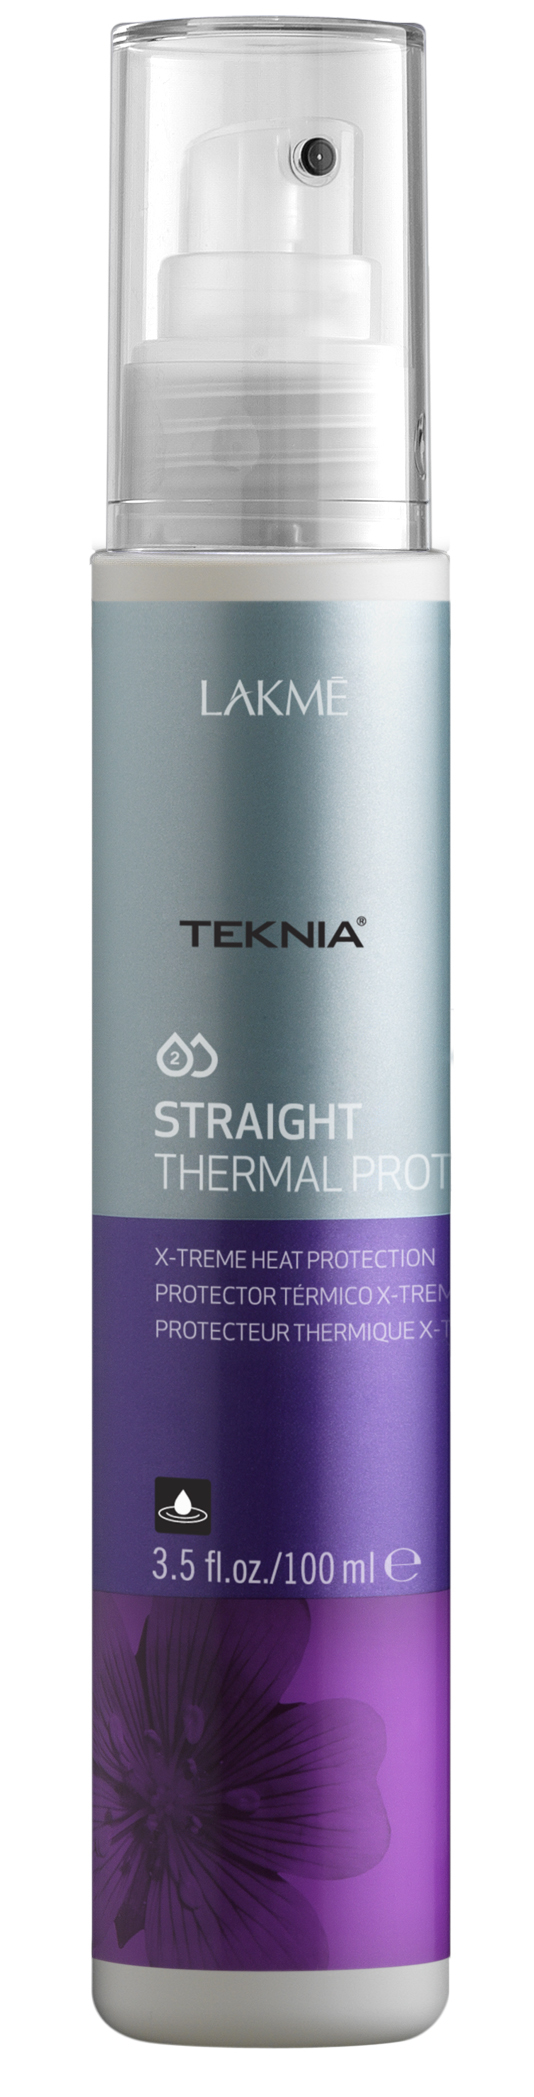 STRAIGHT THERMAL PROTECTOR Cпрей для экстремальной термозащиты волос (100 мл)